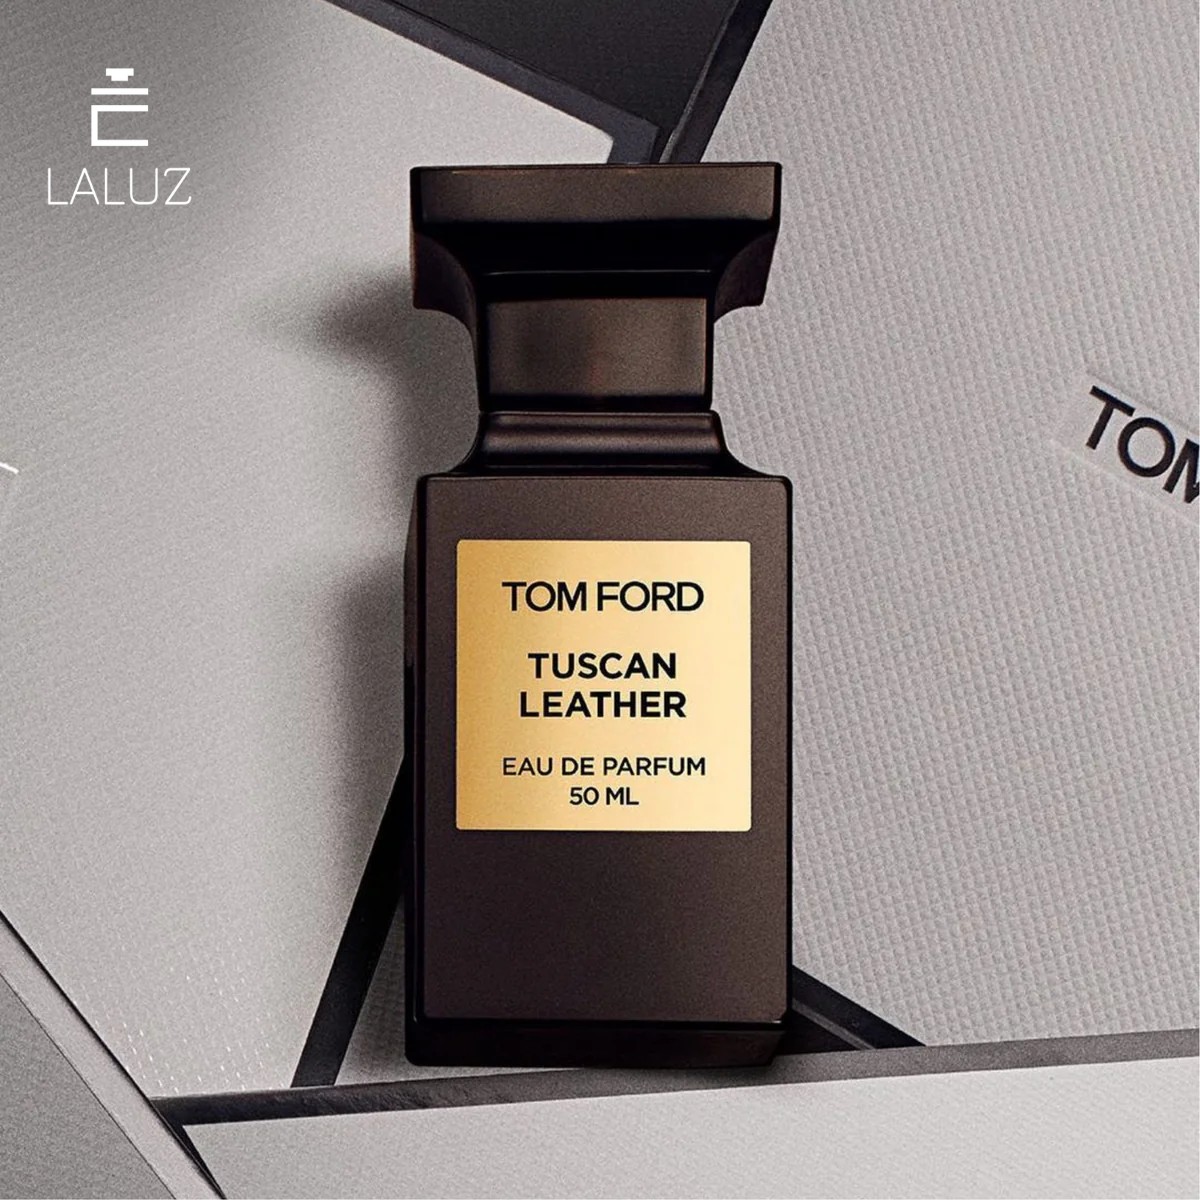 Nước hoa Tom Ford mang mùi hương từ những xưởng thuộc da truyền thống của Ý